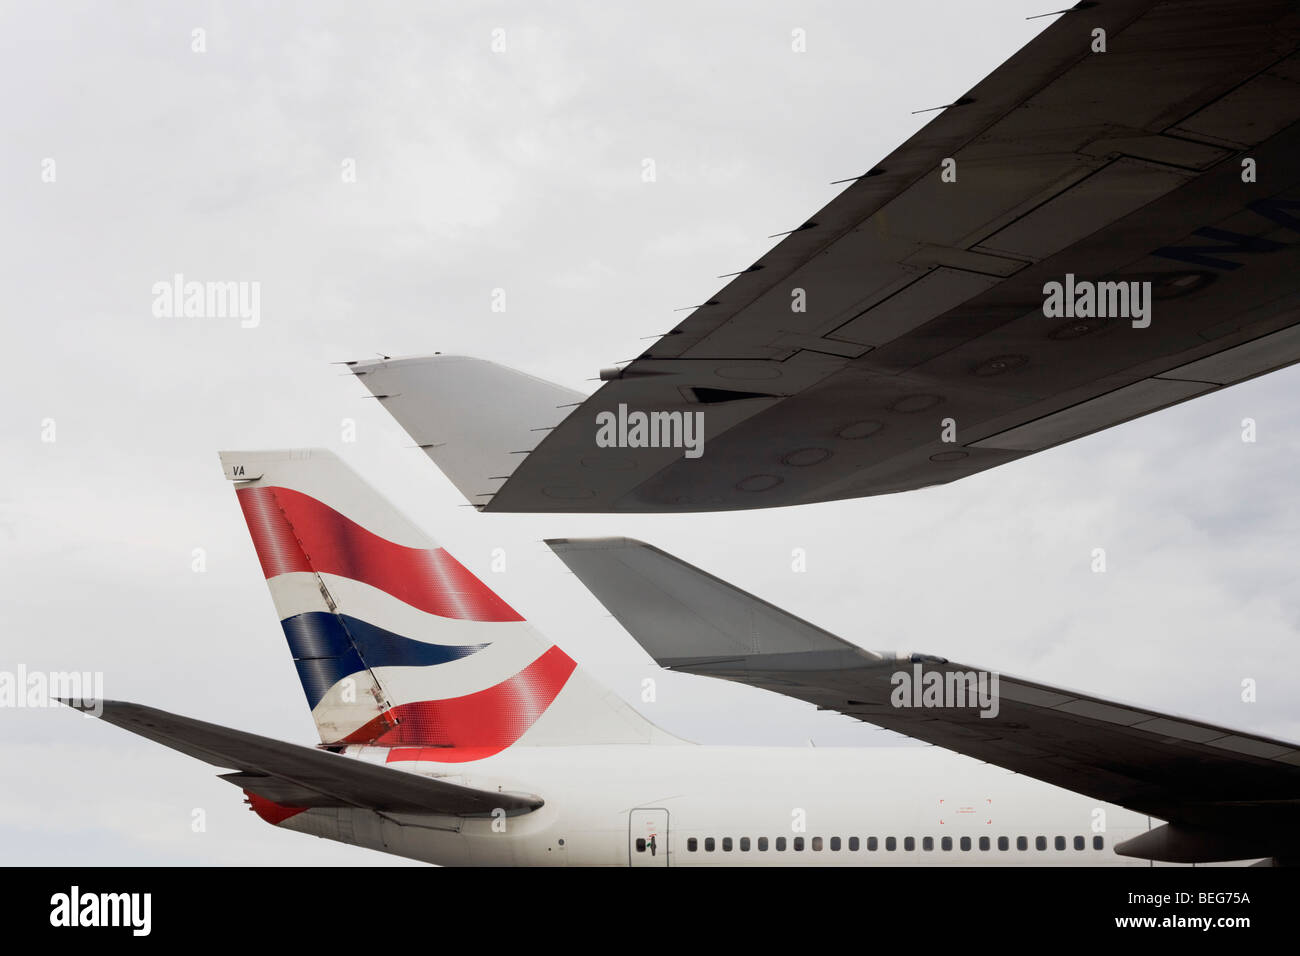 Extrémités d'aile et de la queue de 747 avions de British Airways sont presque au contact au cours de leurs retournements pendant que sur un tablier à Heathrow Banque D'Images